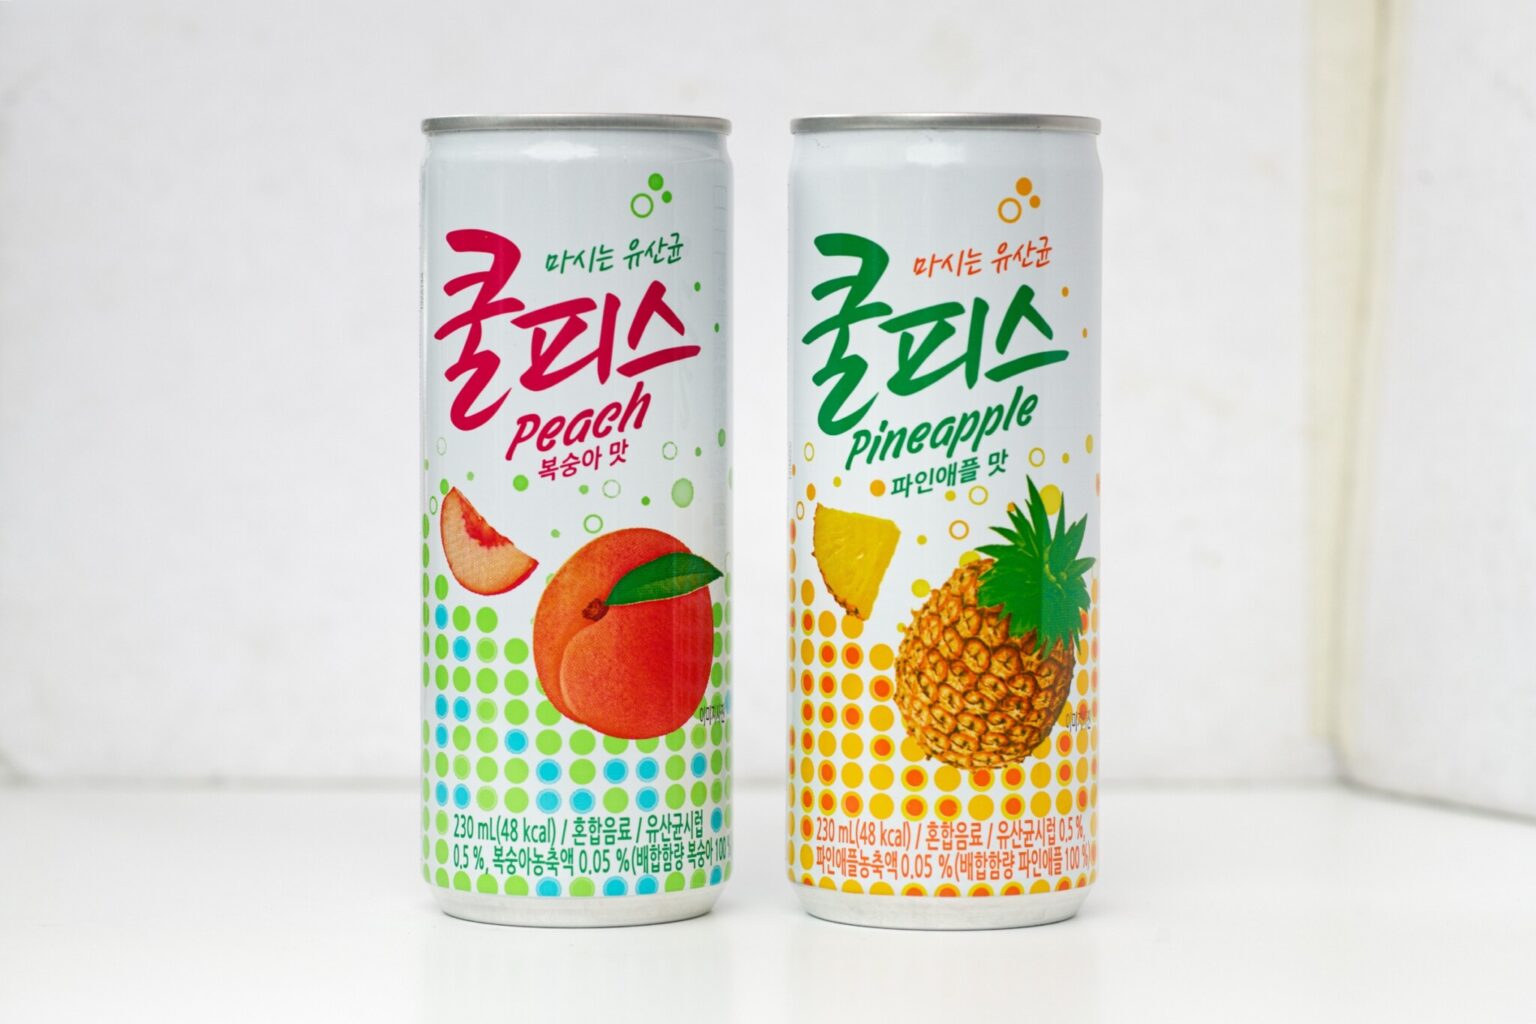 韓国で飲む乳酸菌として人気のジュース。1缶390円。